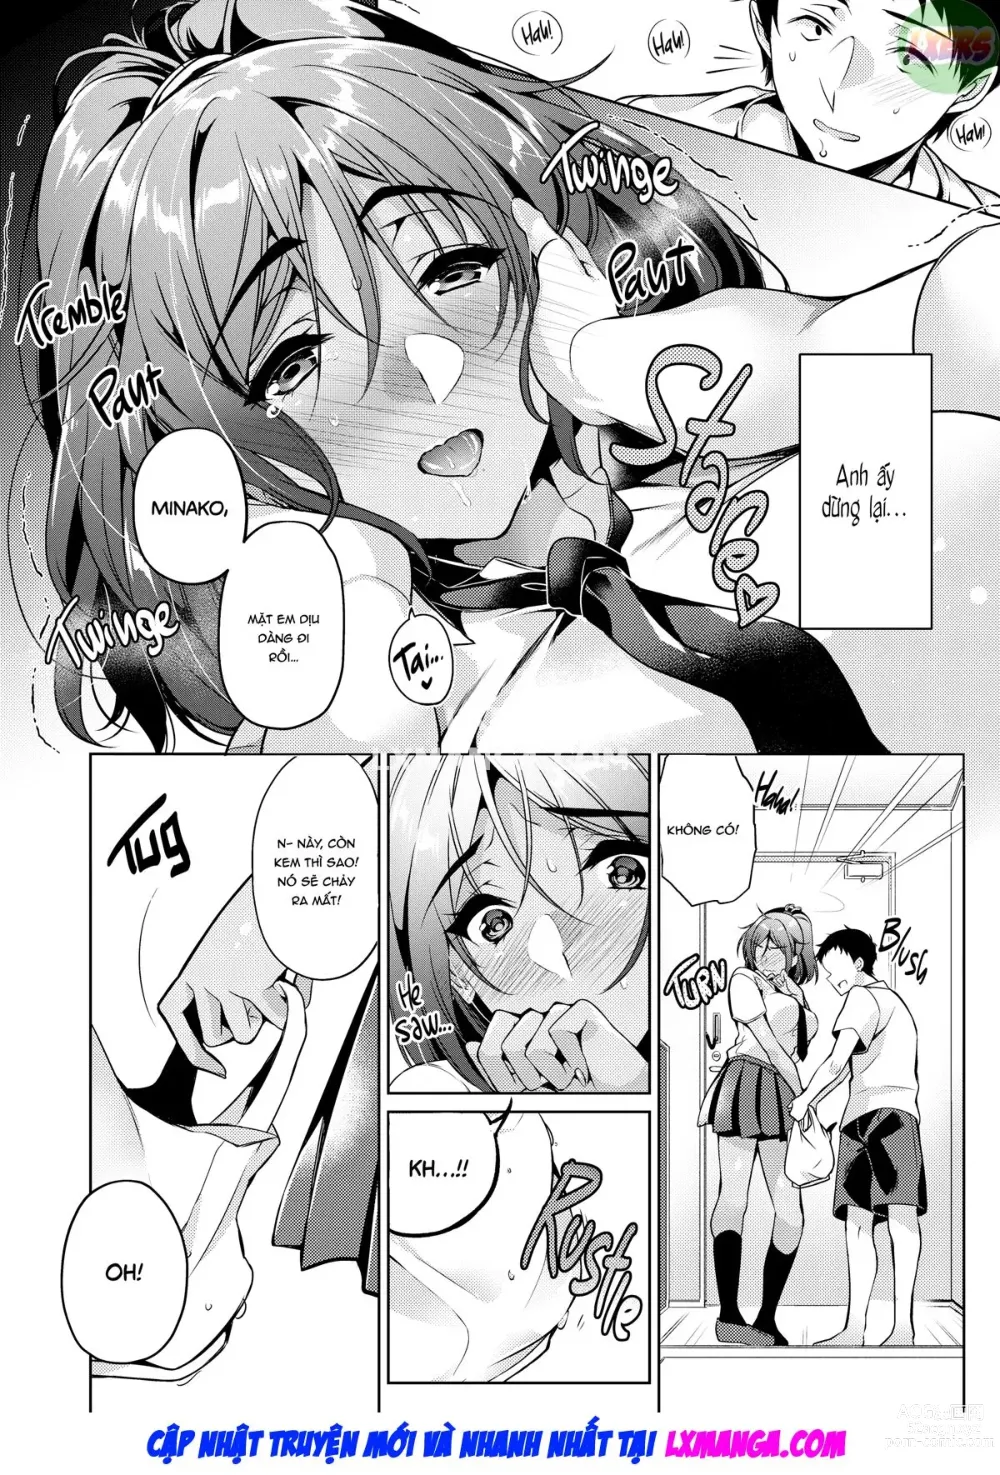 Page 14 of doujinshi Mình tan chảy khi người ấy nói mình đáng yêu